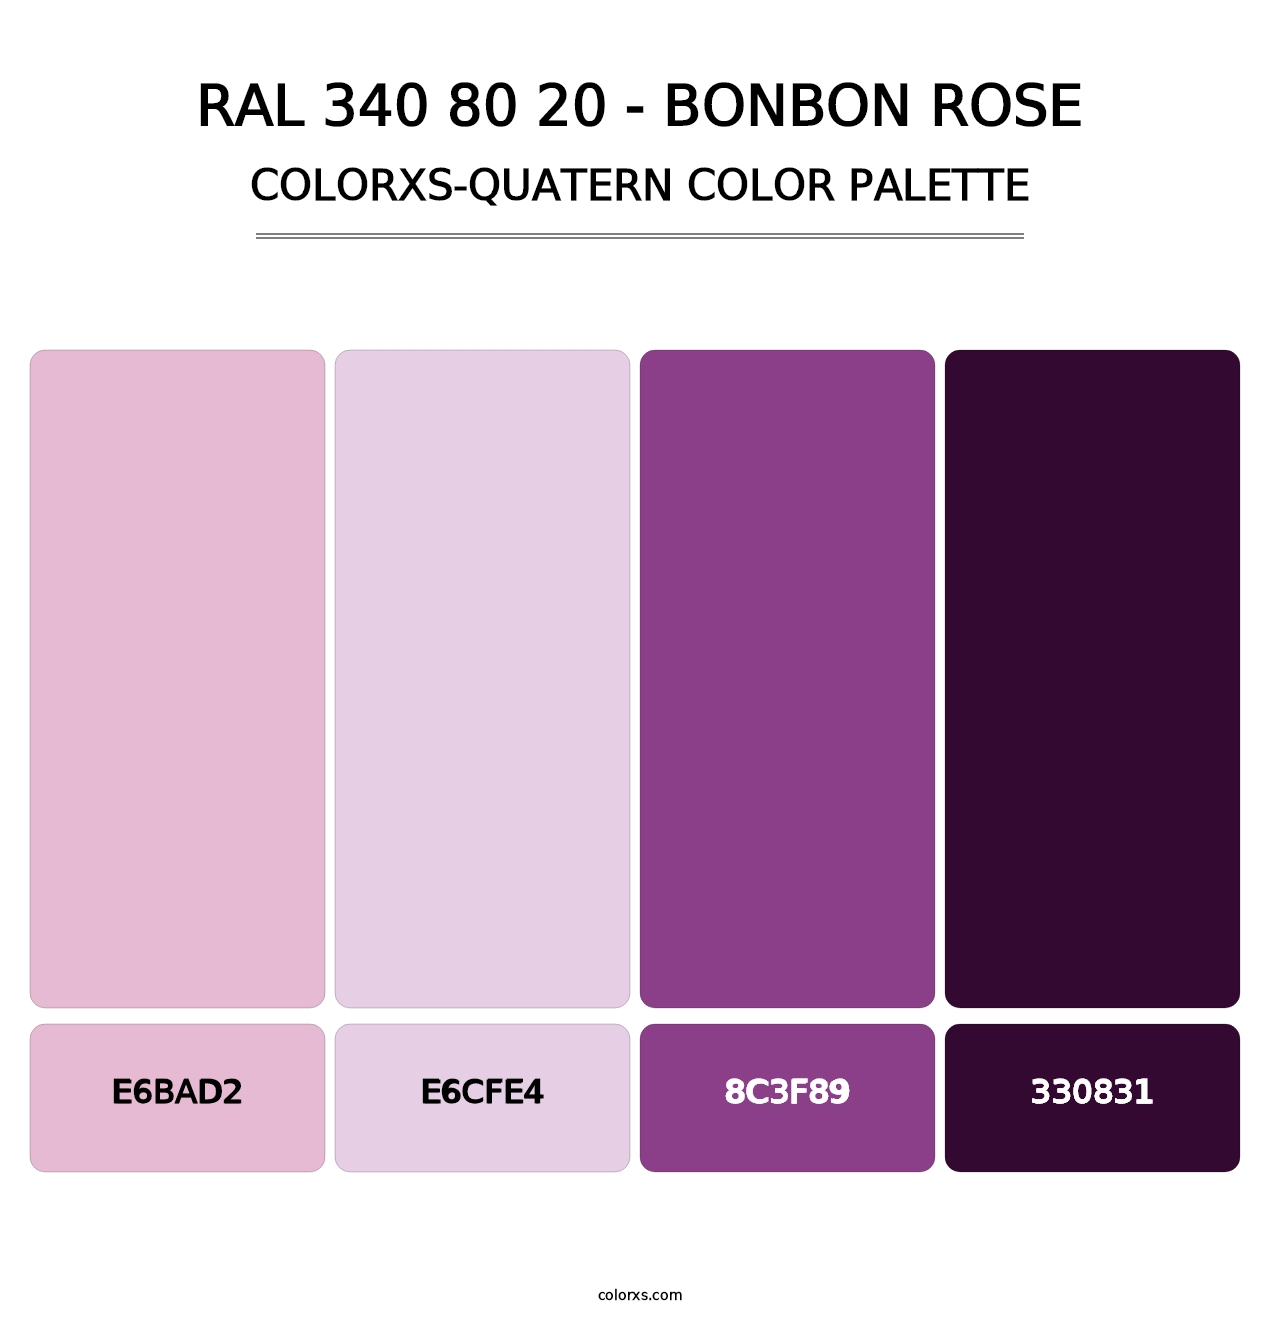 RAL 340 80 20 - Bonbon Rose - Colorxs Quatern Palette